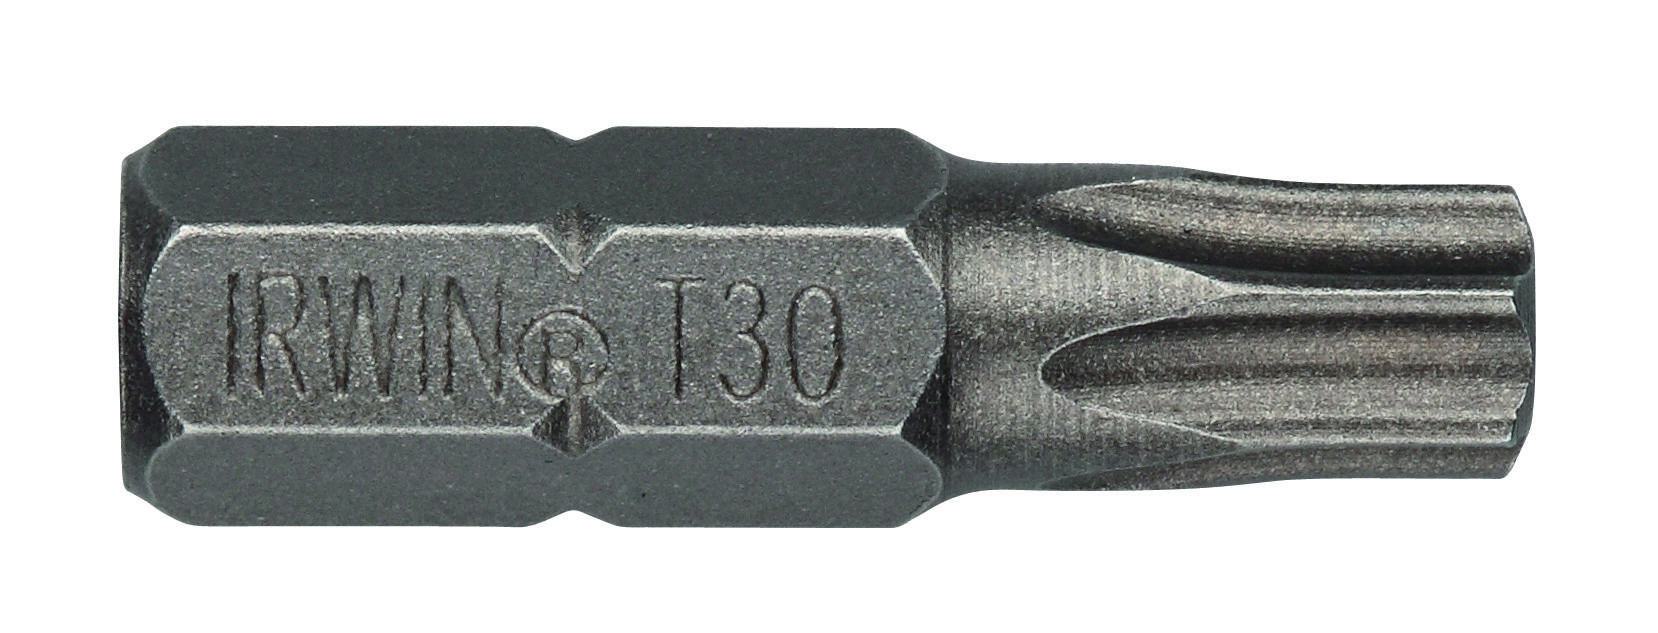 bit nástavec TORX 15  25mm (10ks)  IRWIN 0.09 Kg MAXMIX Sklad14 671142 5